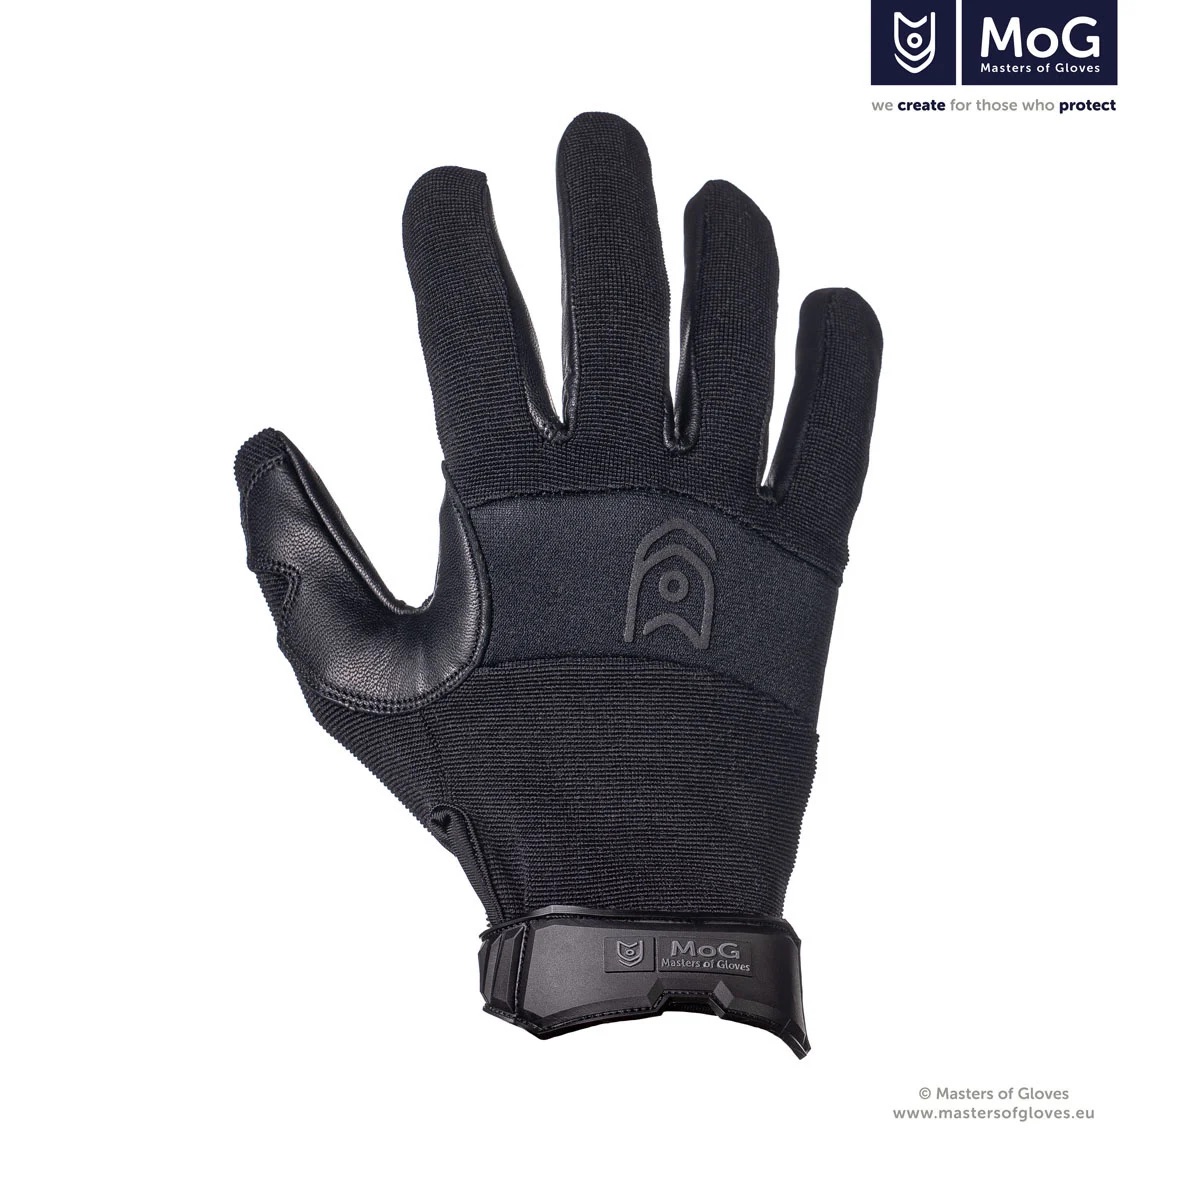 mog-master-of-gloves-2ndskin-gloves-black-cut-resi